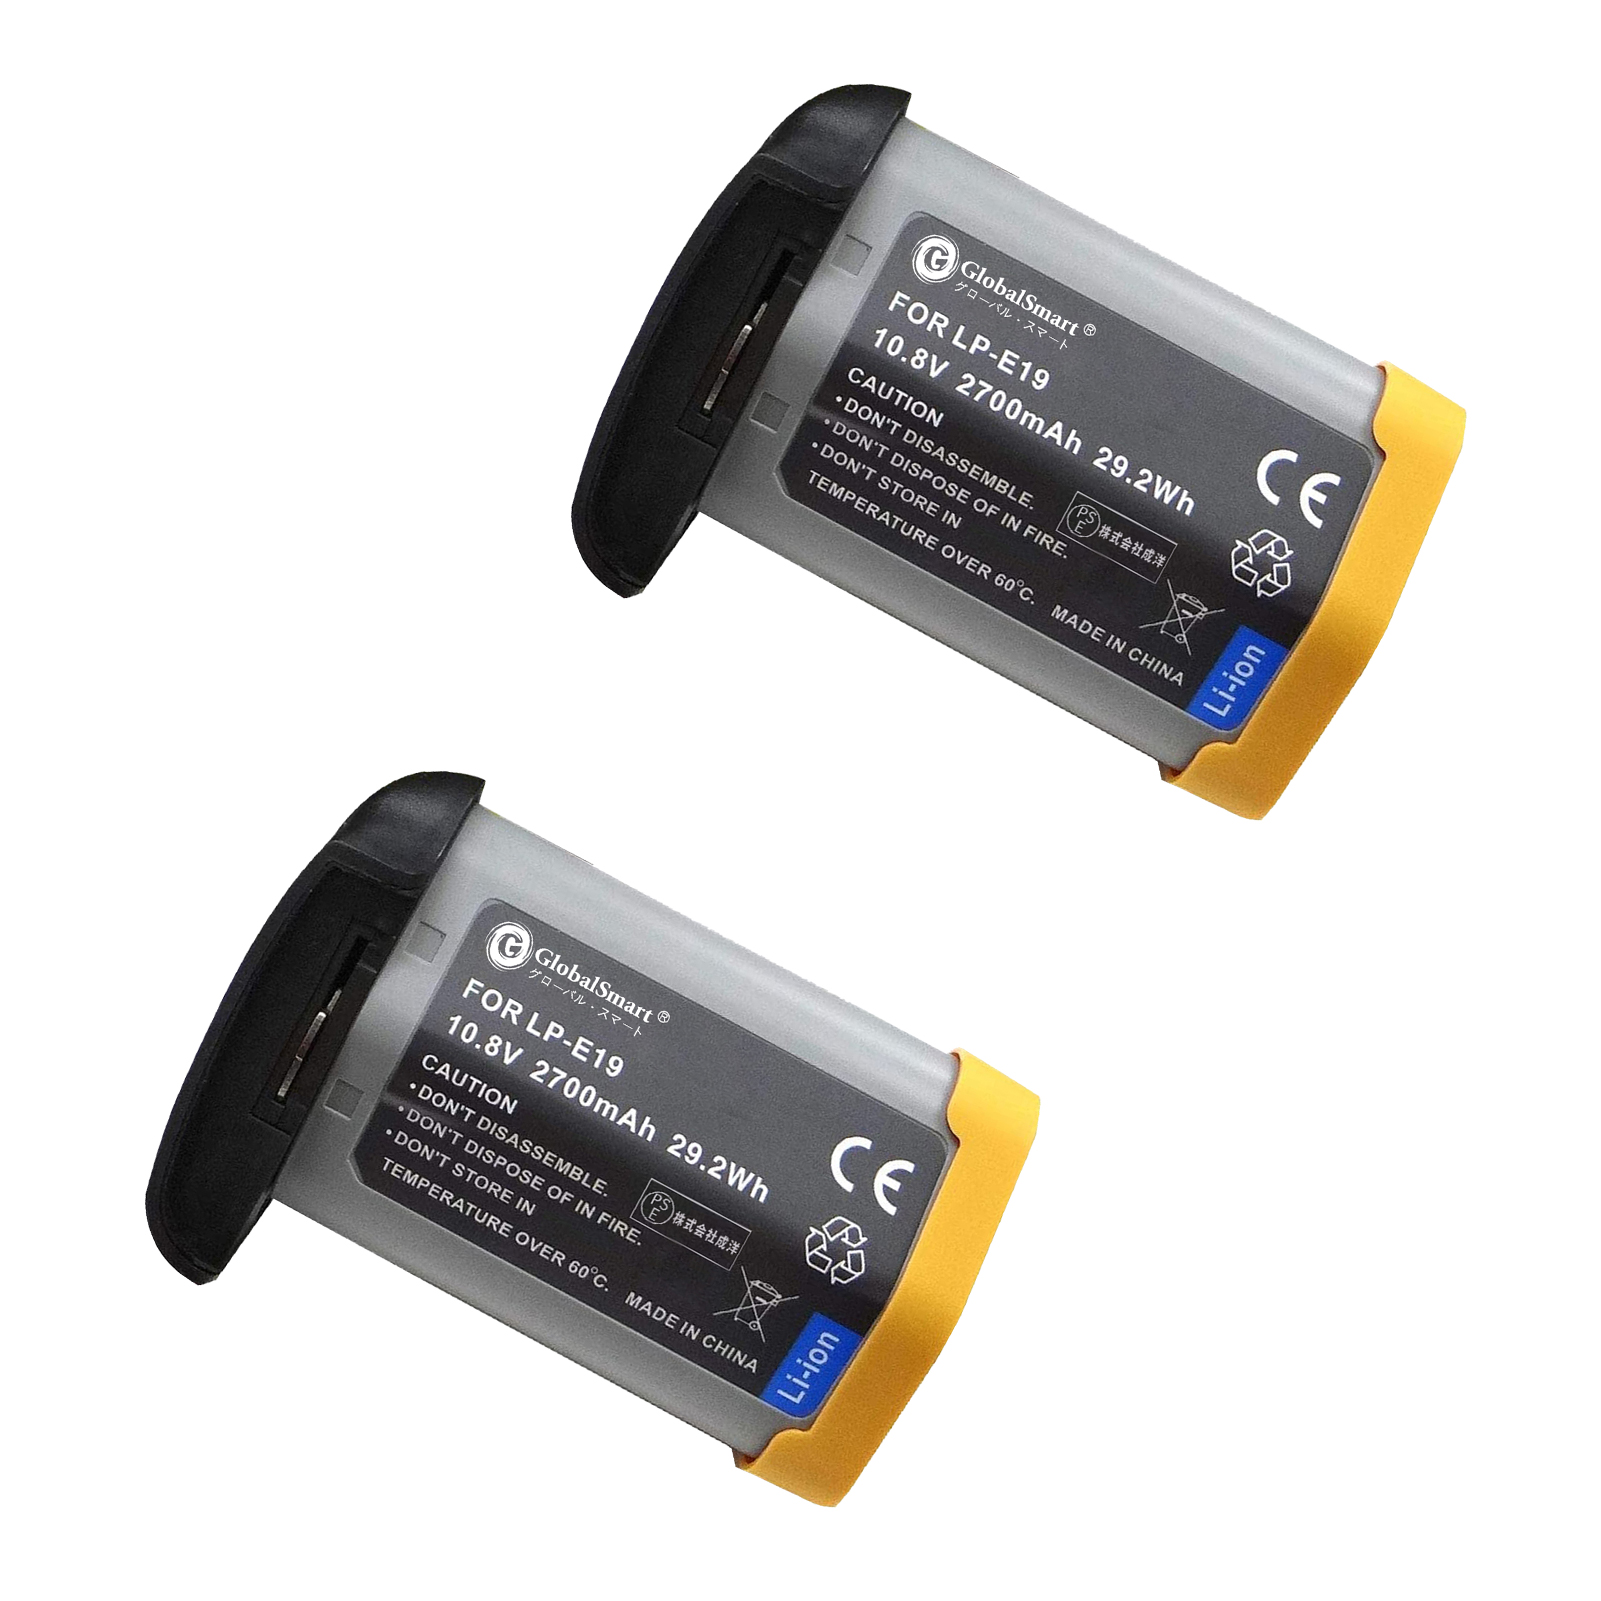 新品 CANONキヤノン EOS 1D Mark III 互換バッテリパック互換バッテリー リチウムイオンバッテリー デジタルビデオカメラ デジカメ PSE認証 1年保証 対応デジタルカメラ 充電池 LG23EQ